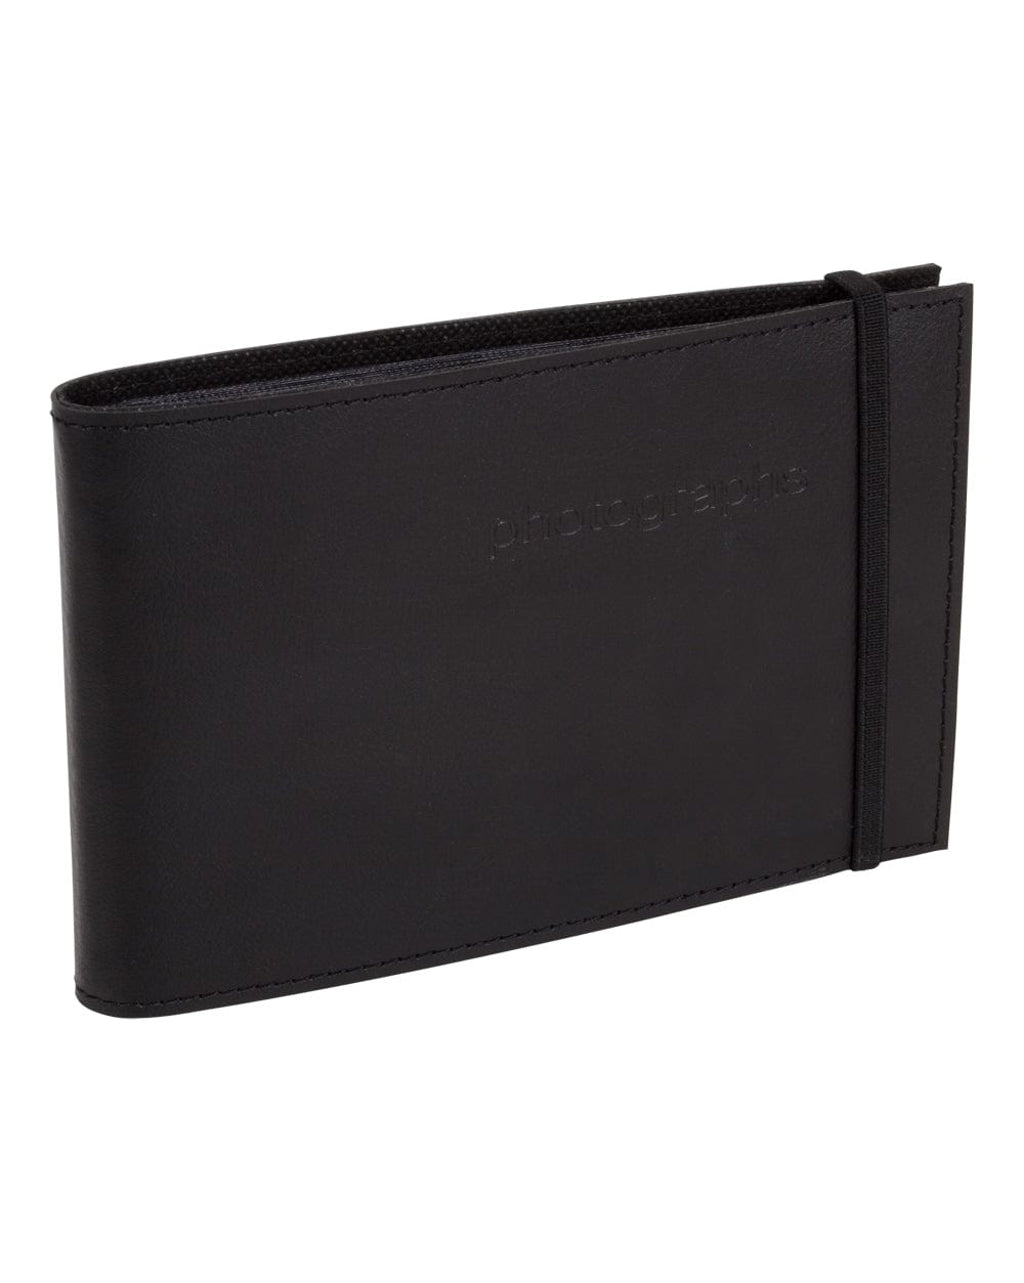 Citi Leather Black Slip-in Brag Book Photo Wallet